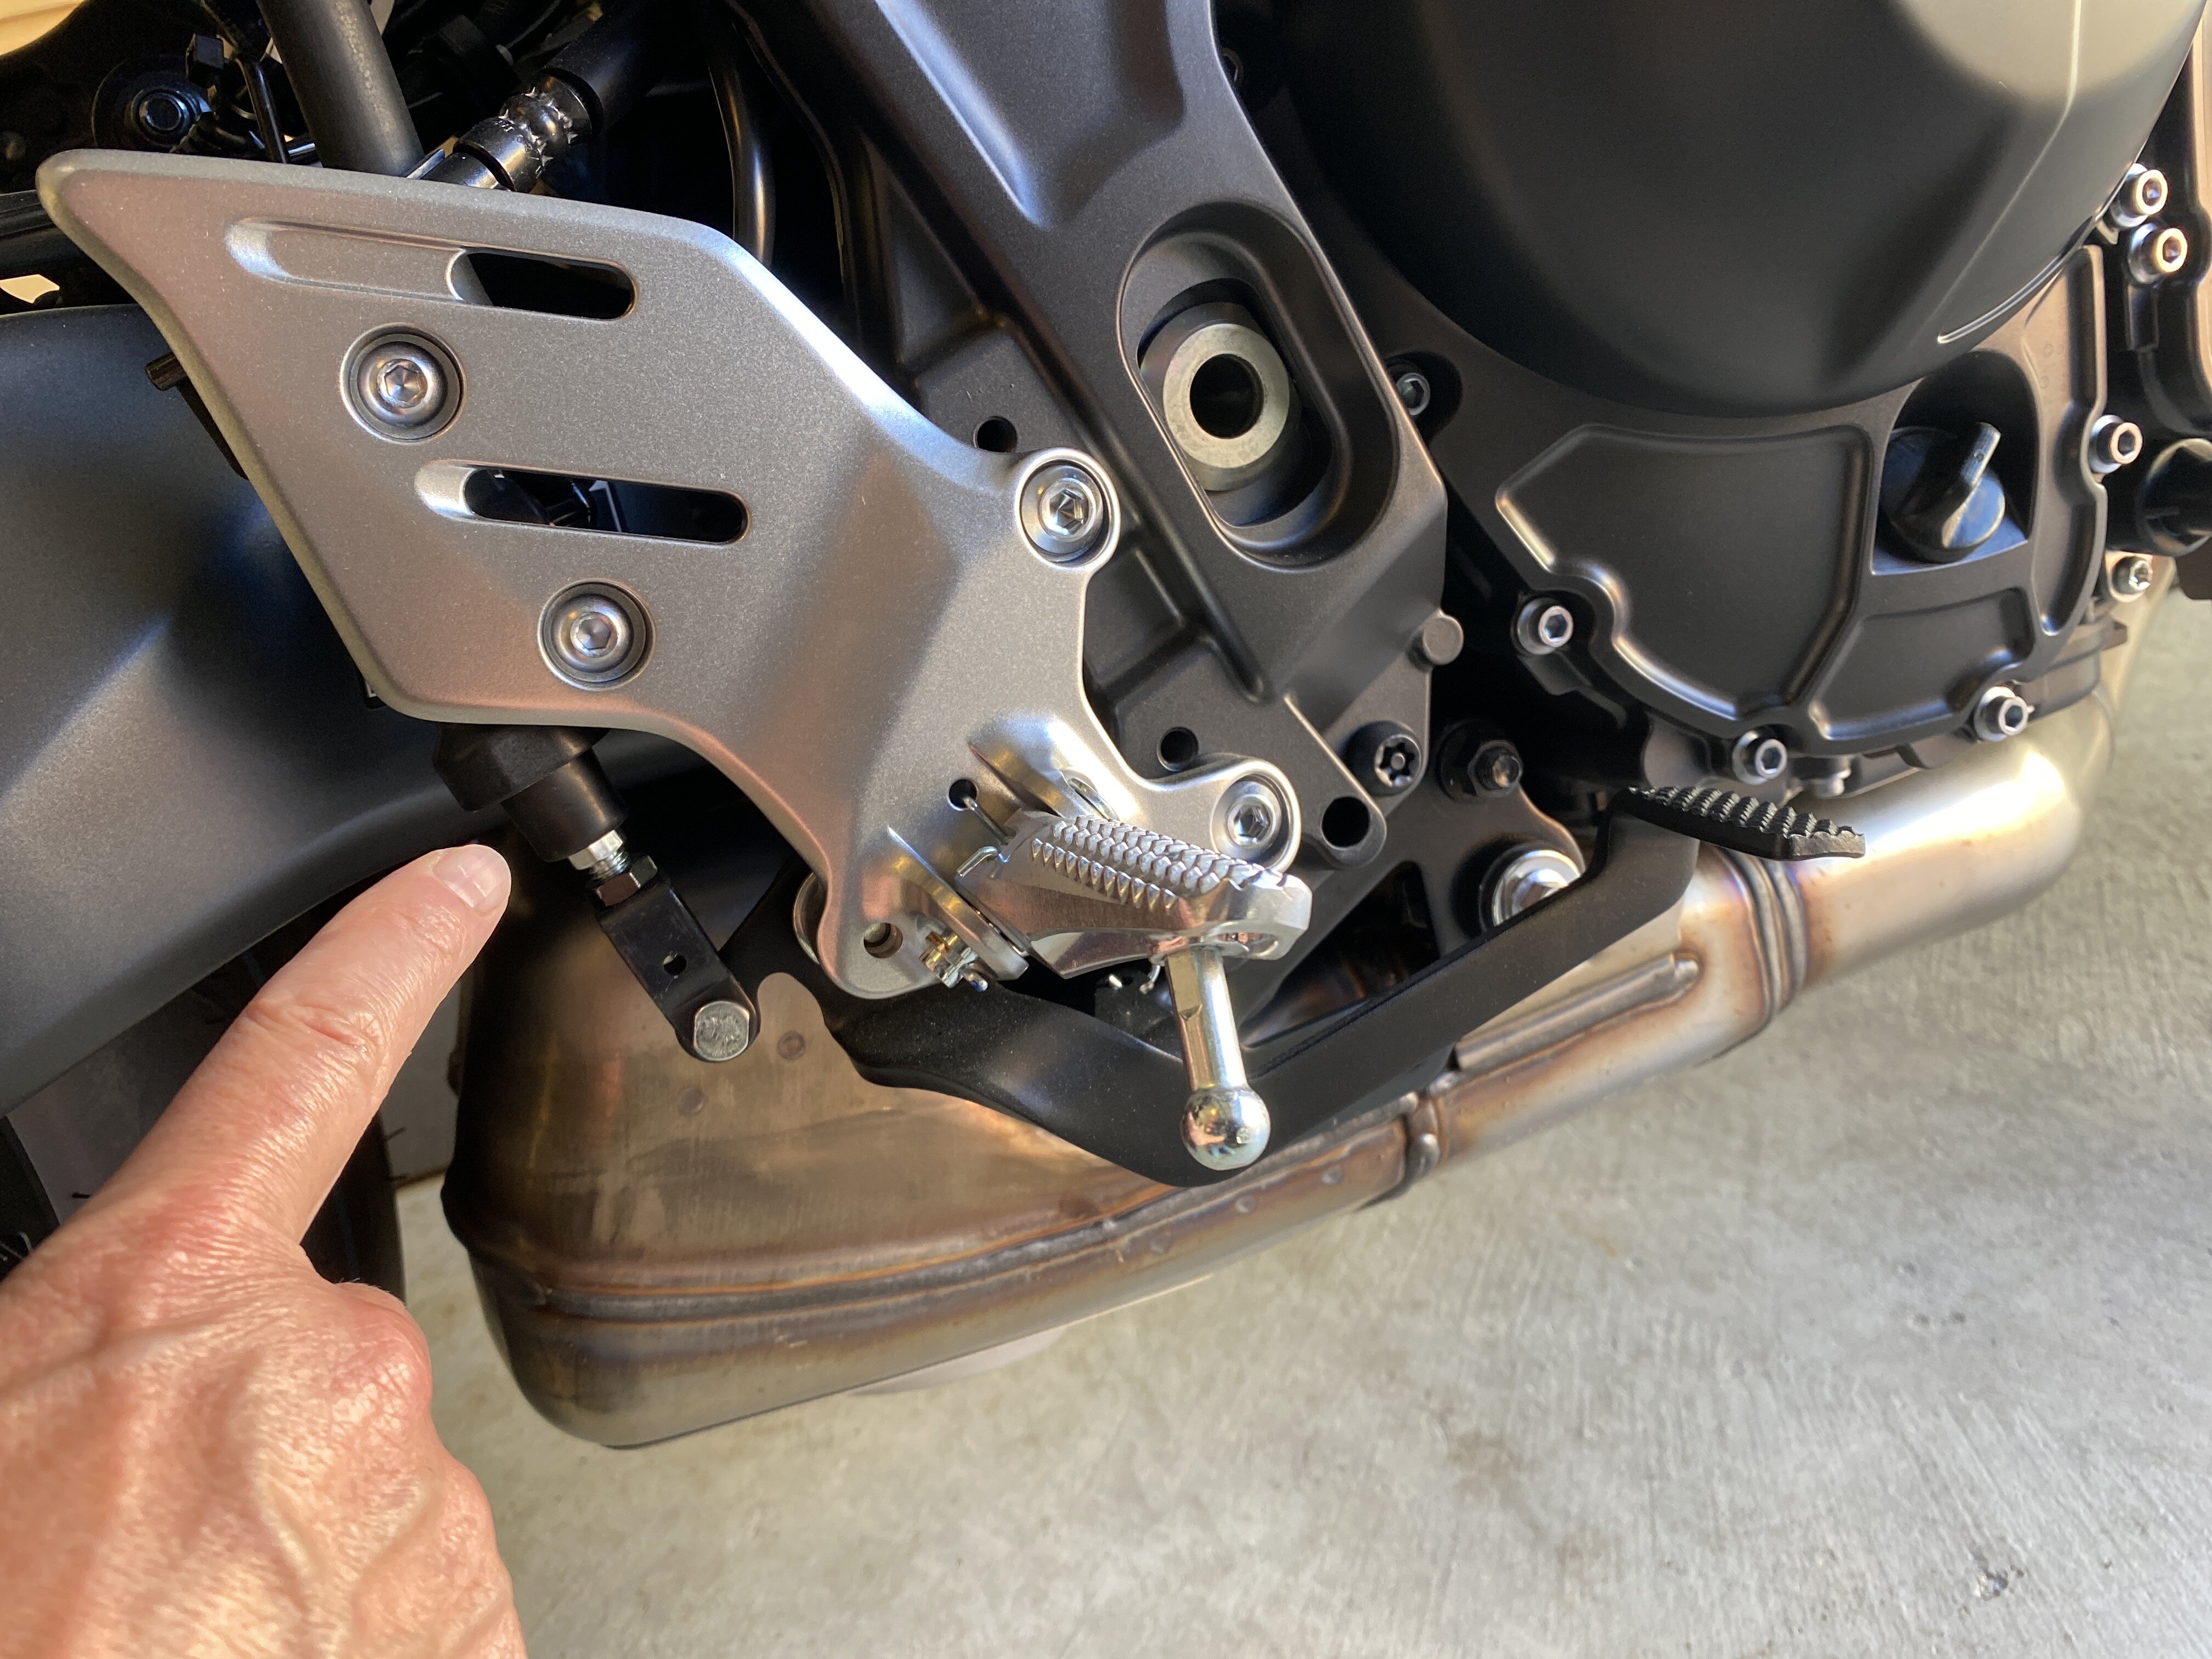 2021 MT-09 rear brake pedal adjustment